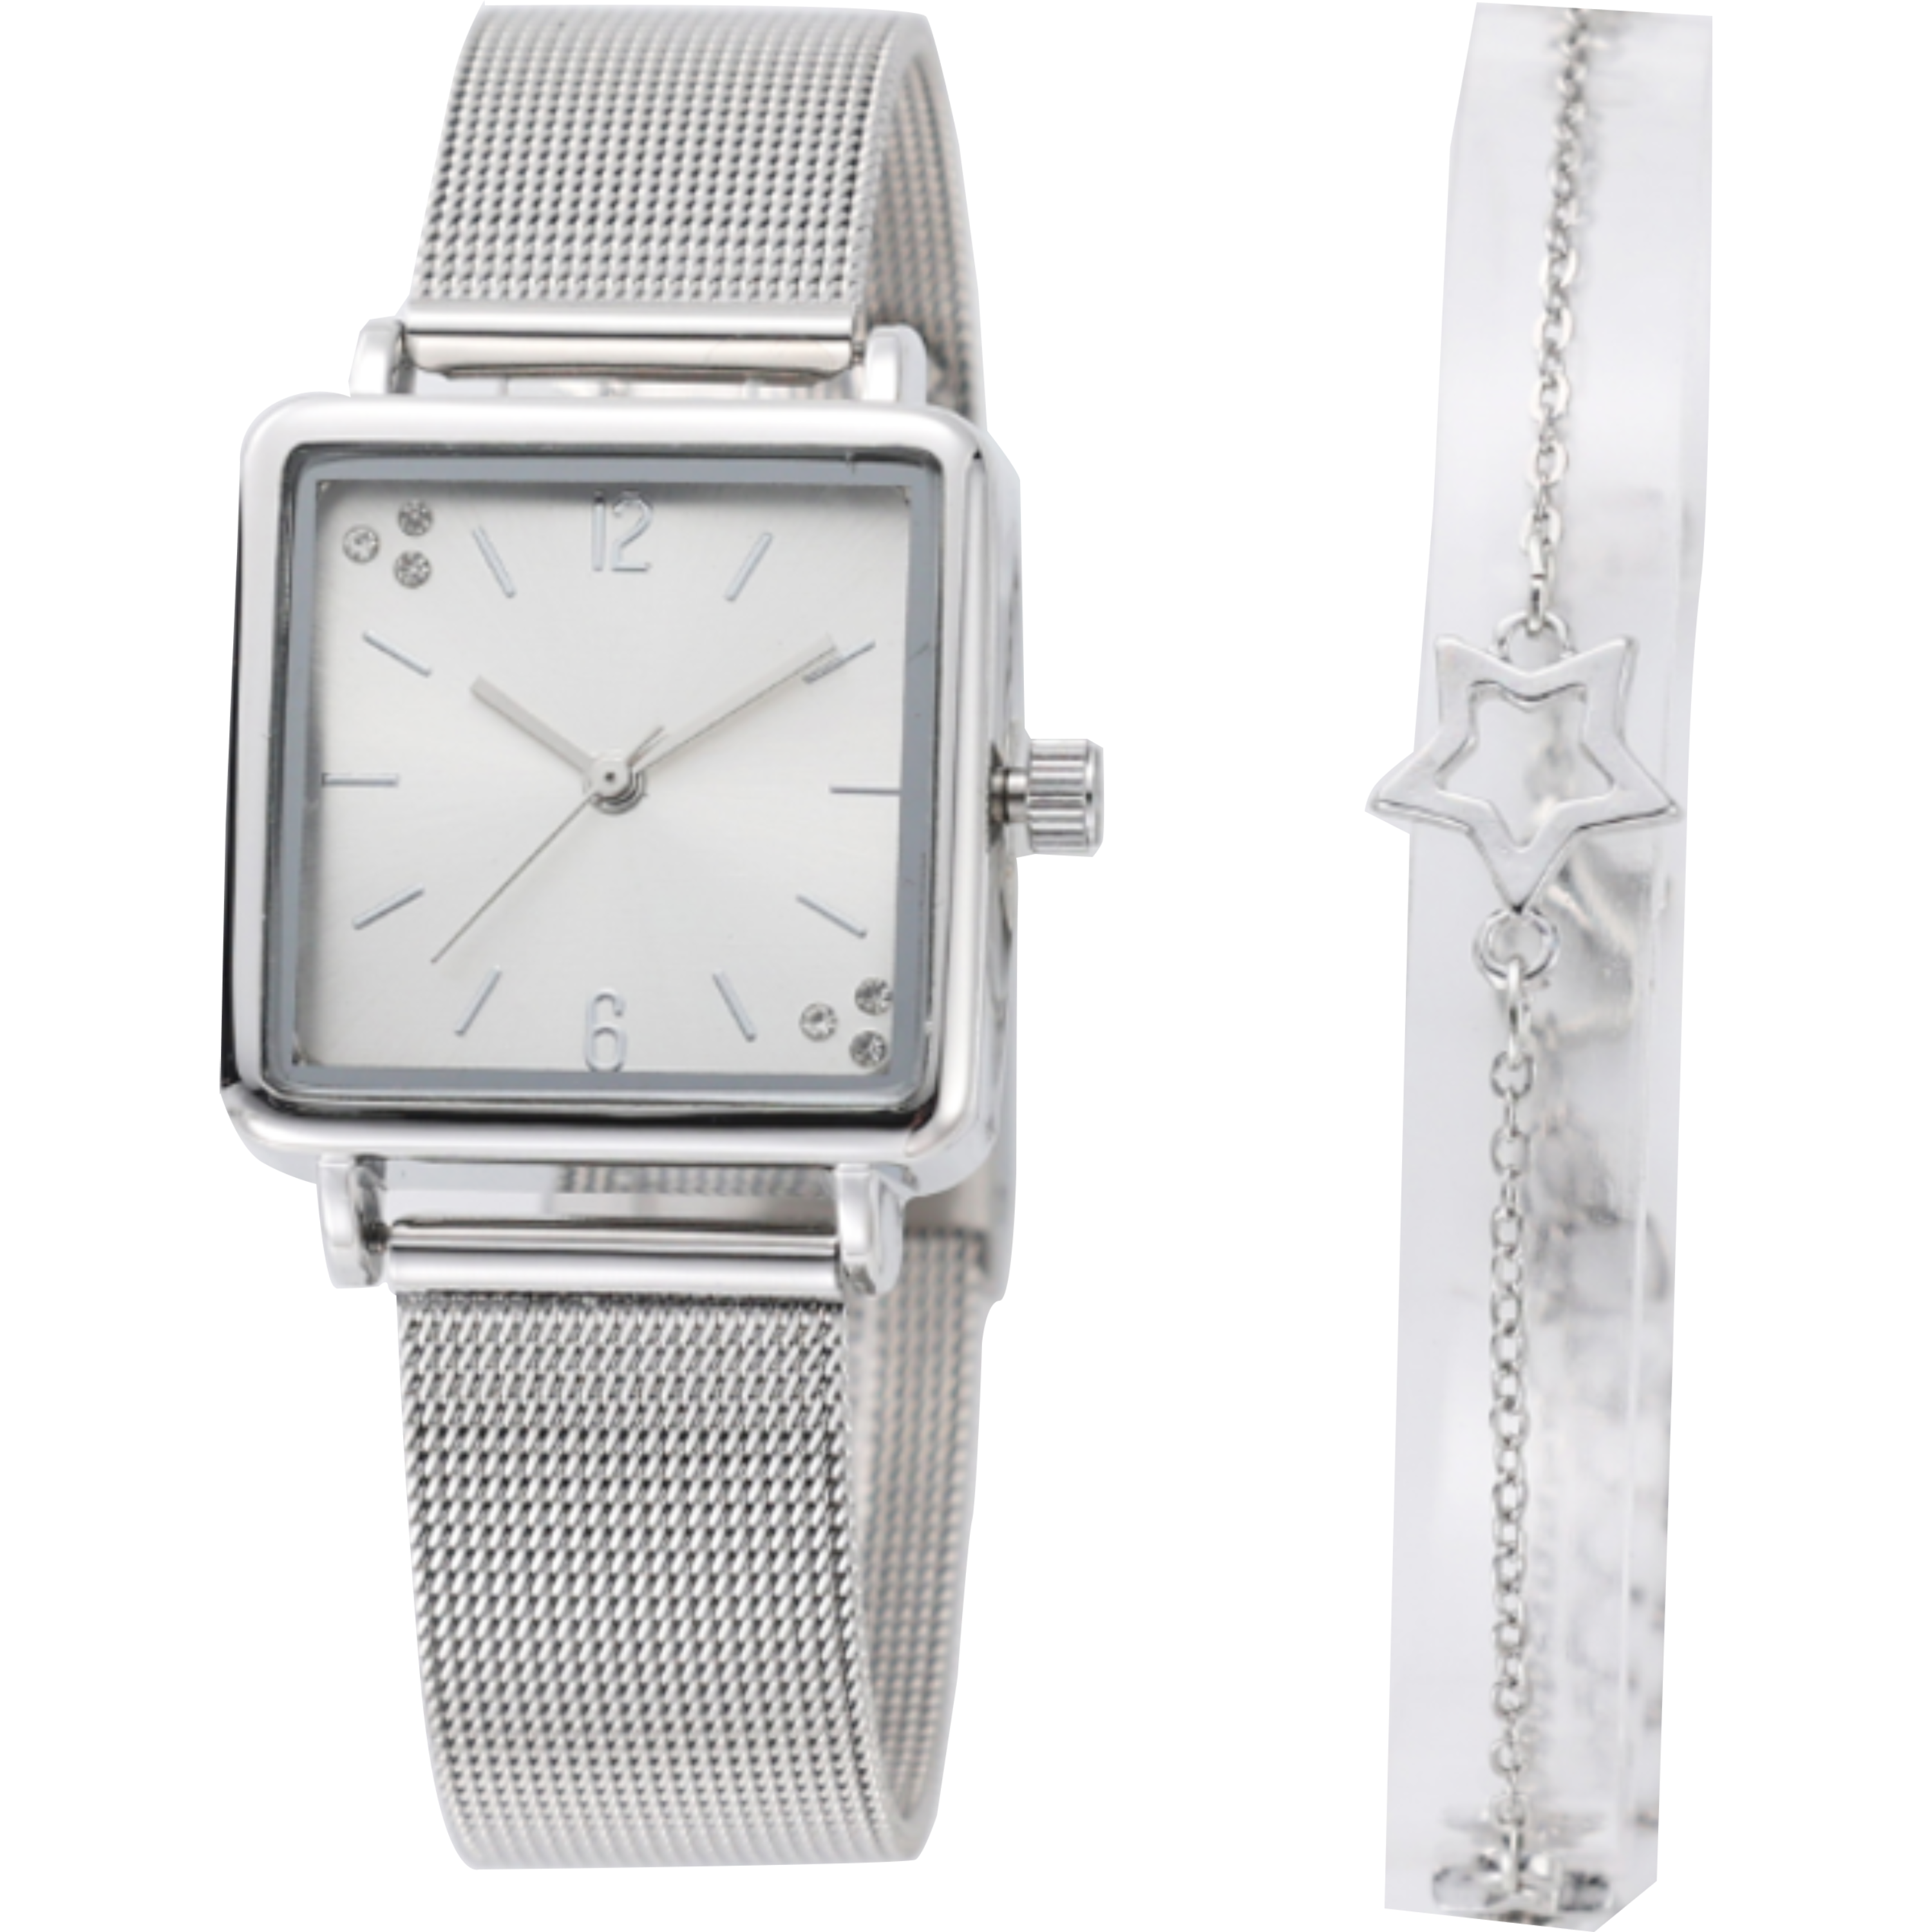 שעון יד לאישה עם צמיד COMTEX SY51 27mm - צבע כסוף אחריות לשנה ע